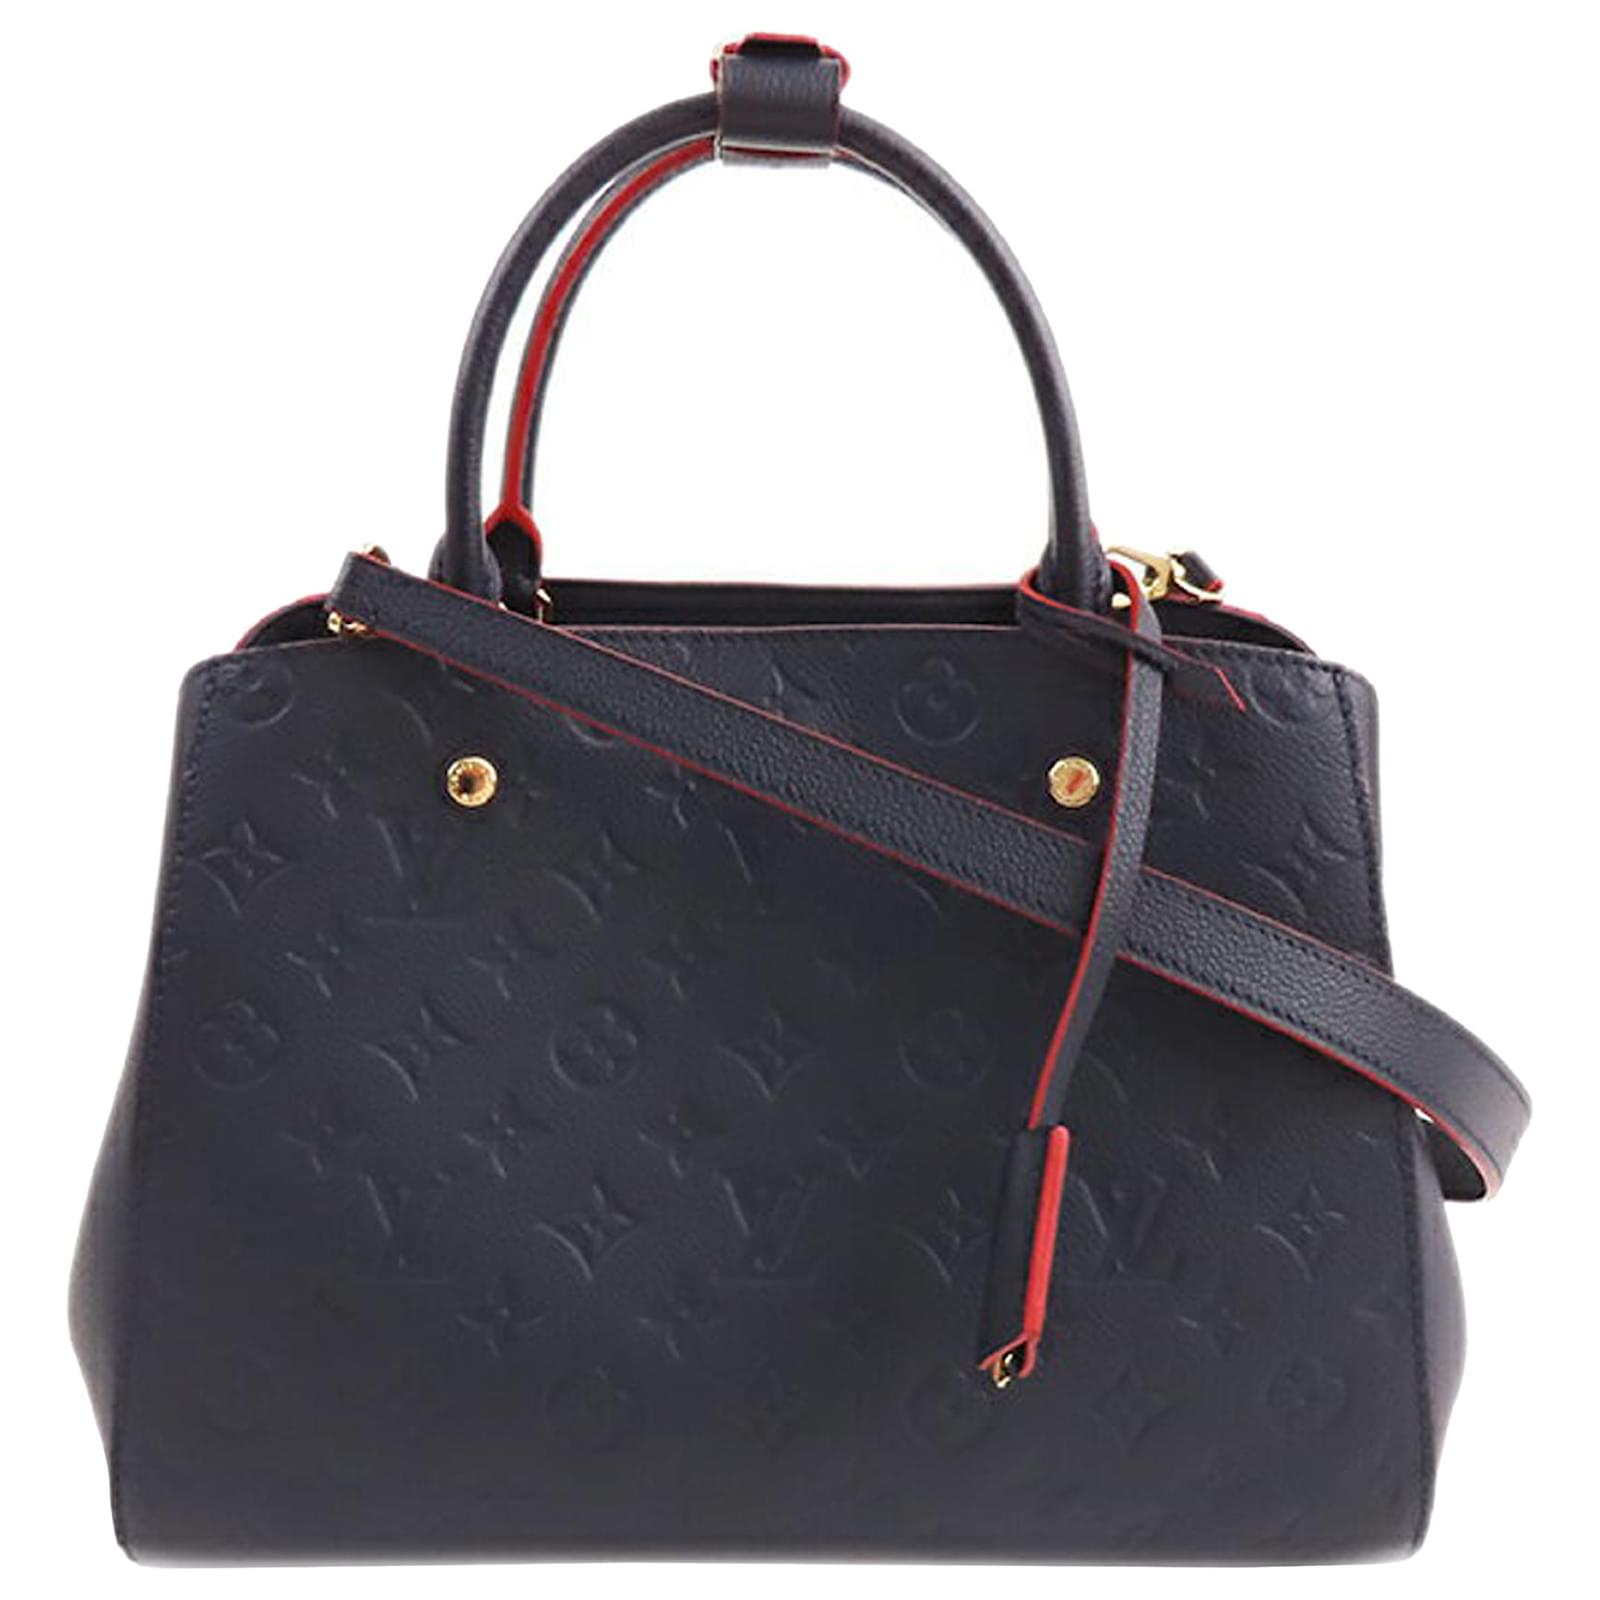 Louis Vuitton Montaigne MM Tote Black Empreinte Leather Shoulder Bag